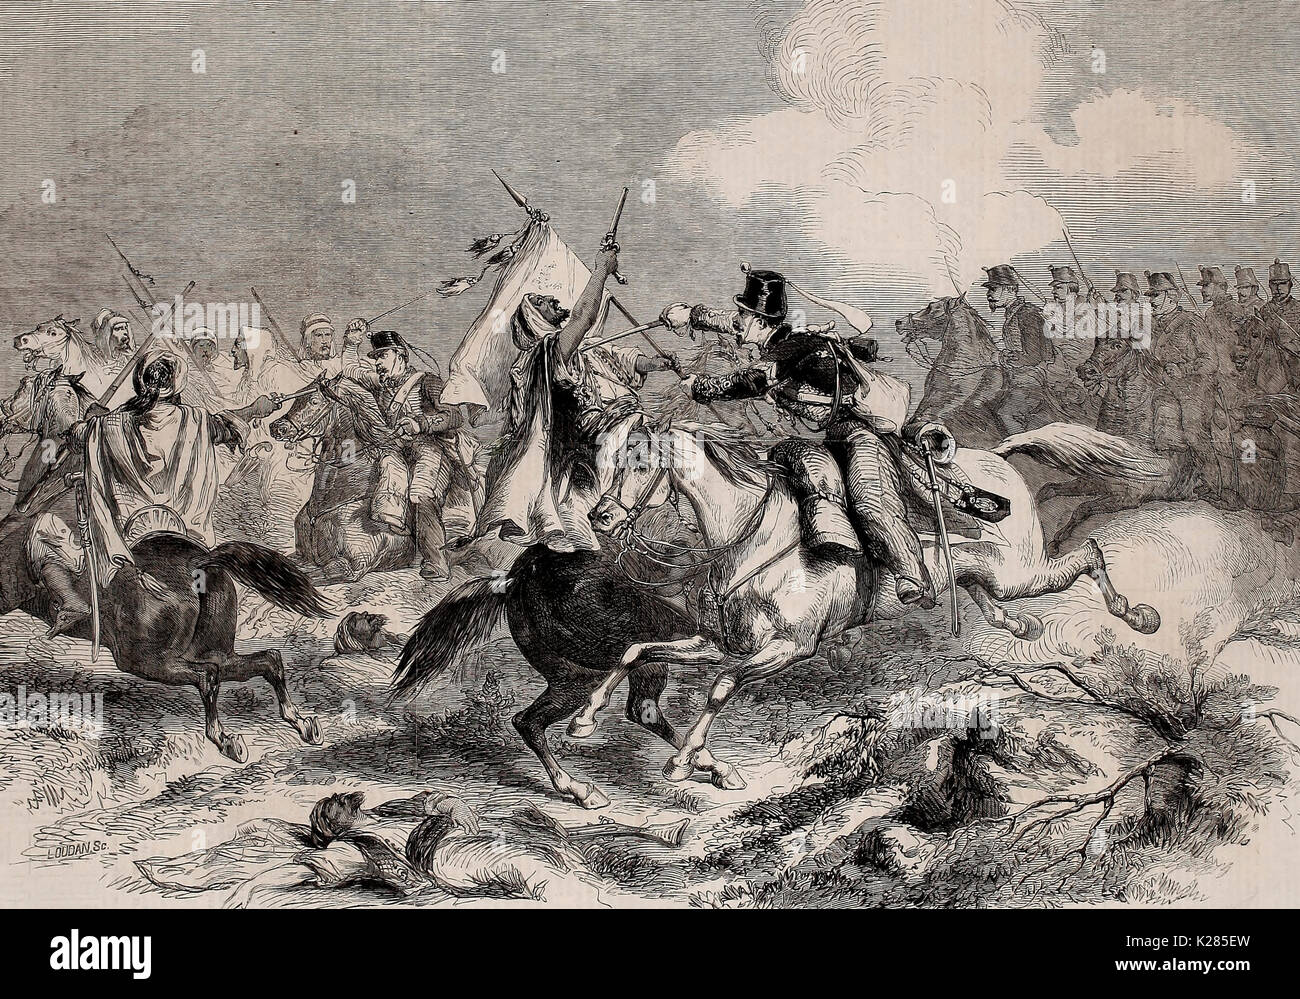 La guerra en Marruecos - Conflicto entre moros y caballería española el 1 de enero, 1860 Foto de stock